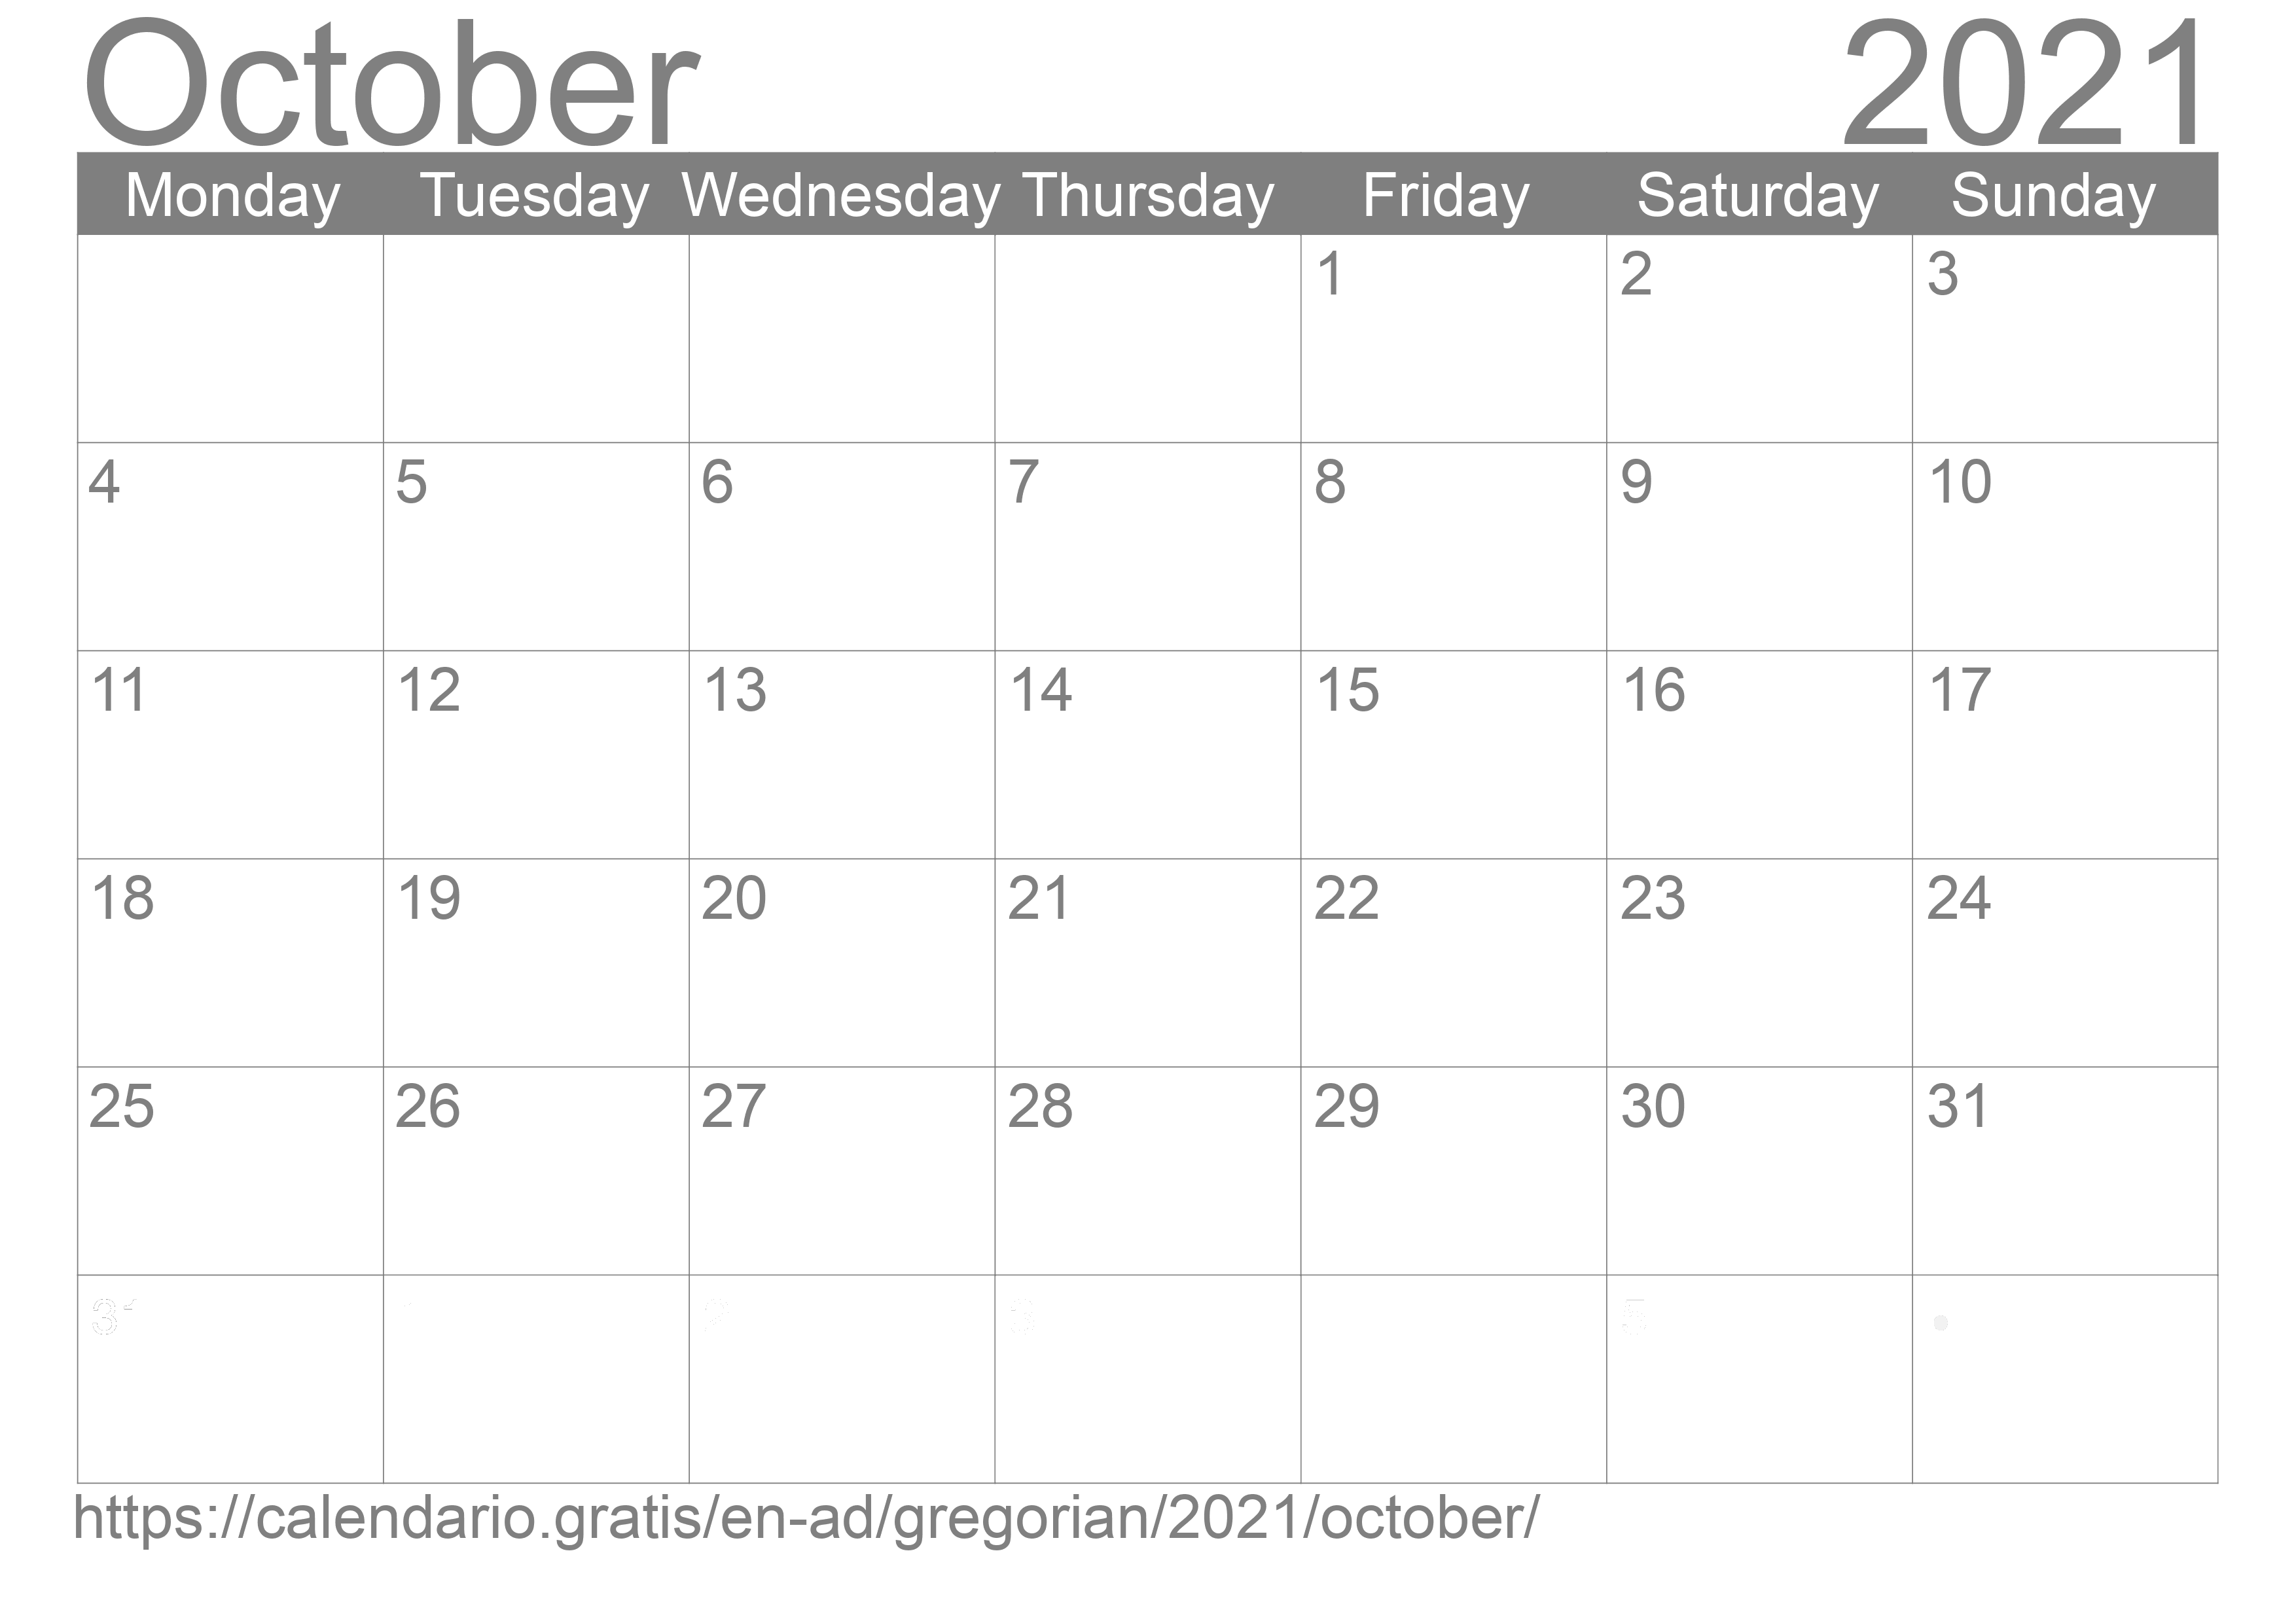 Calendar October 2021 to print